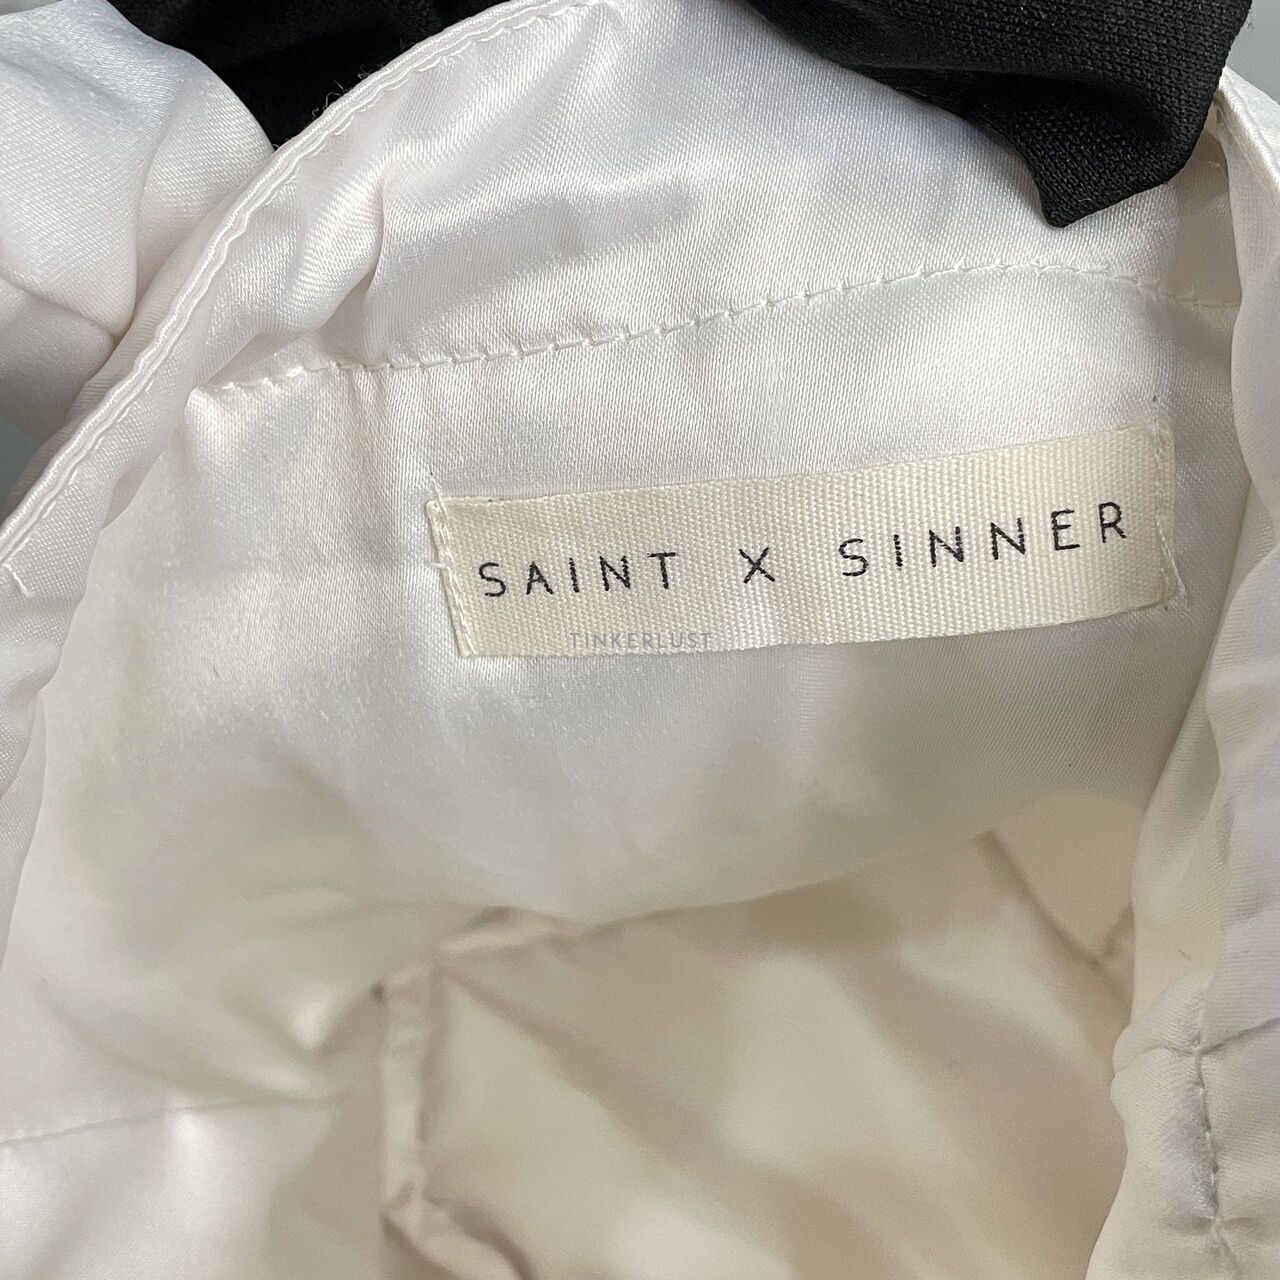 Saint X Sinner Broken White Dumpling Bag